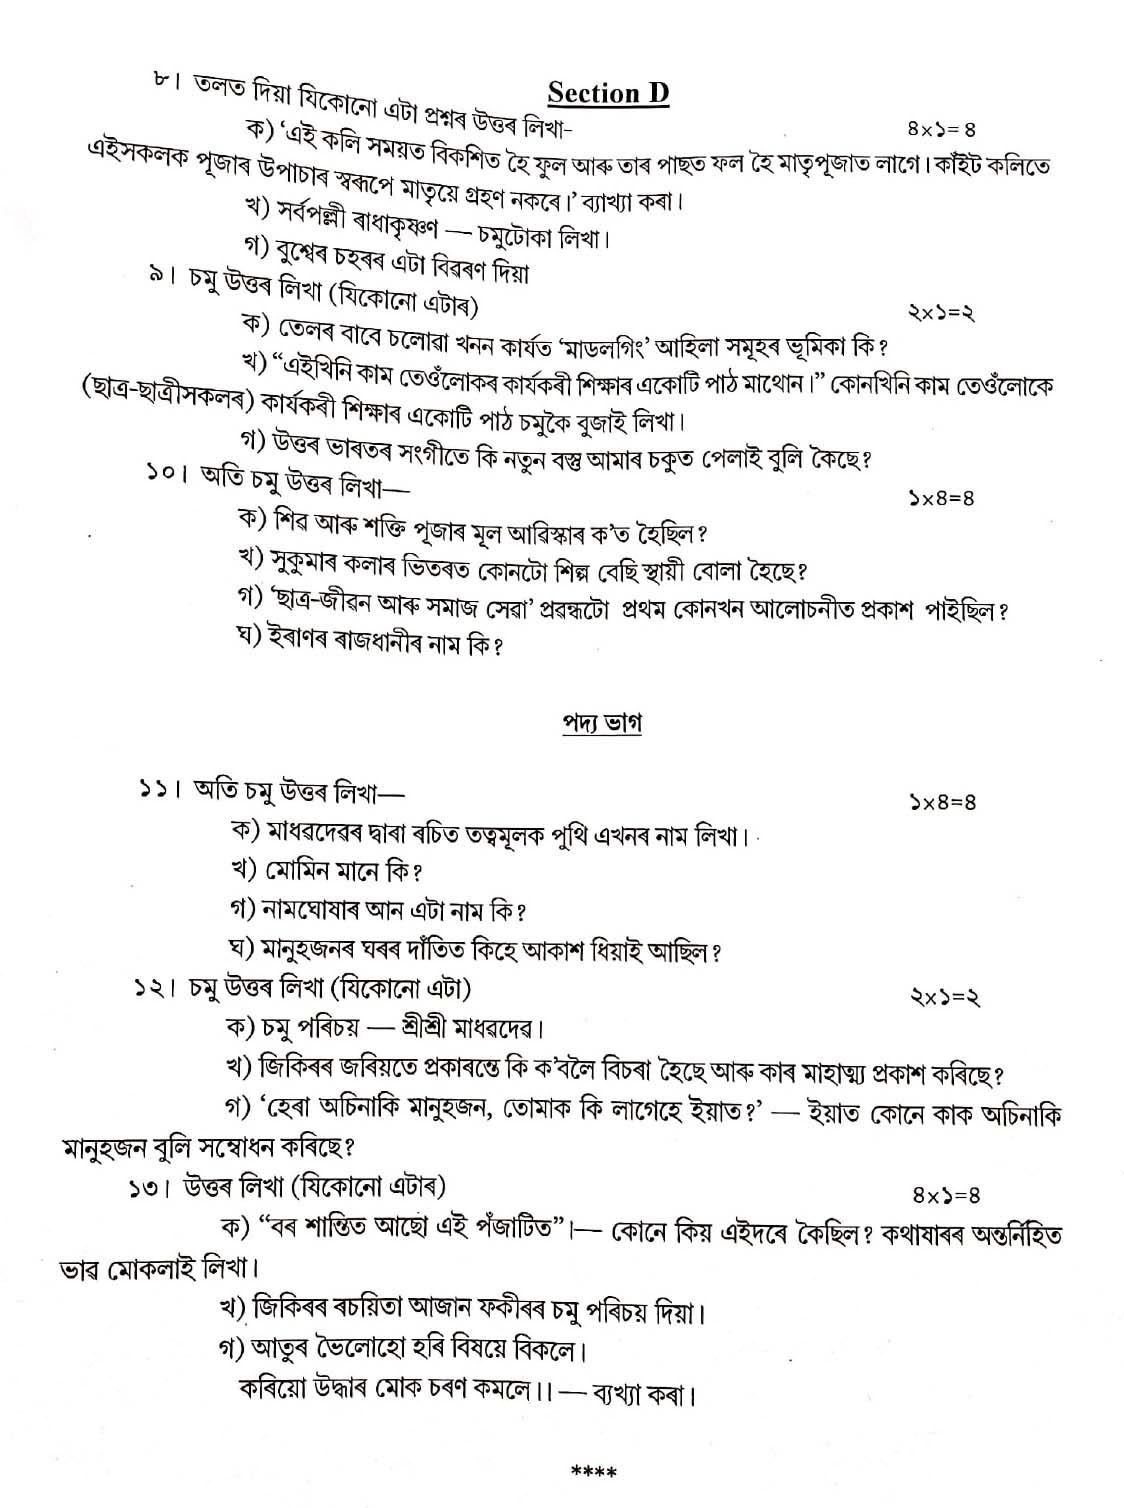 Assamese CBSE Class X Sample Question Paper 2019 20 - Image 4